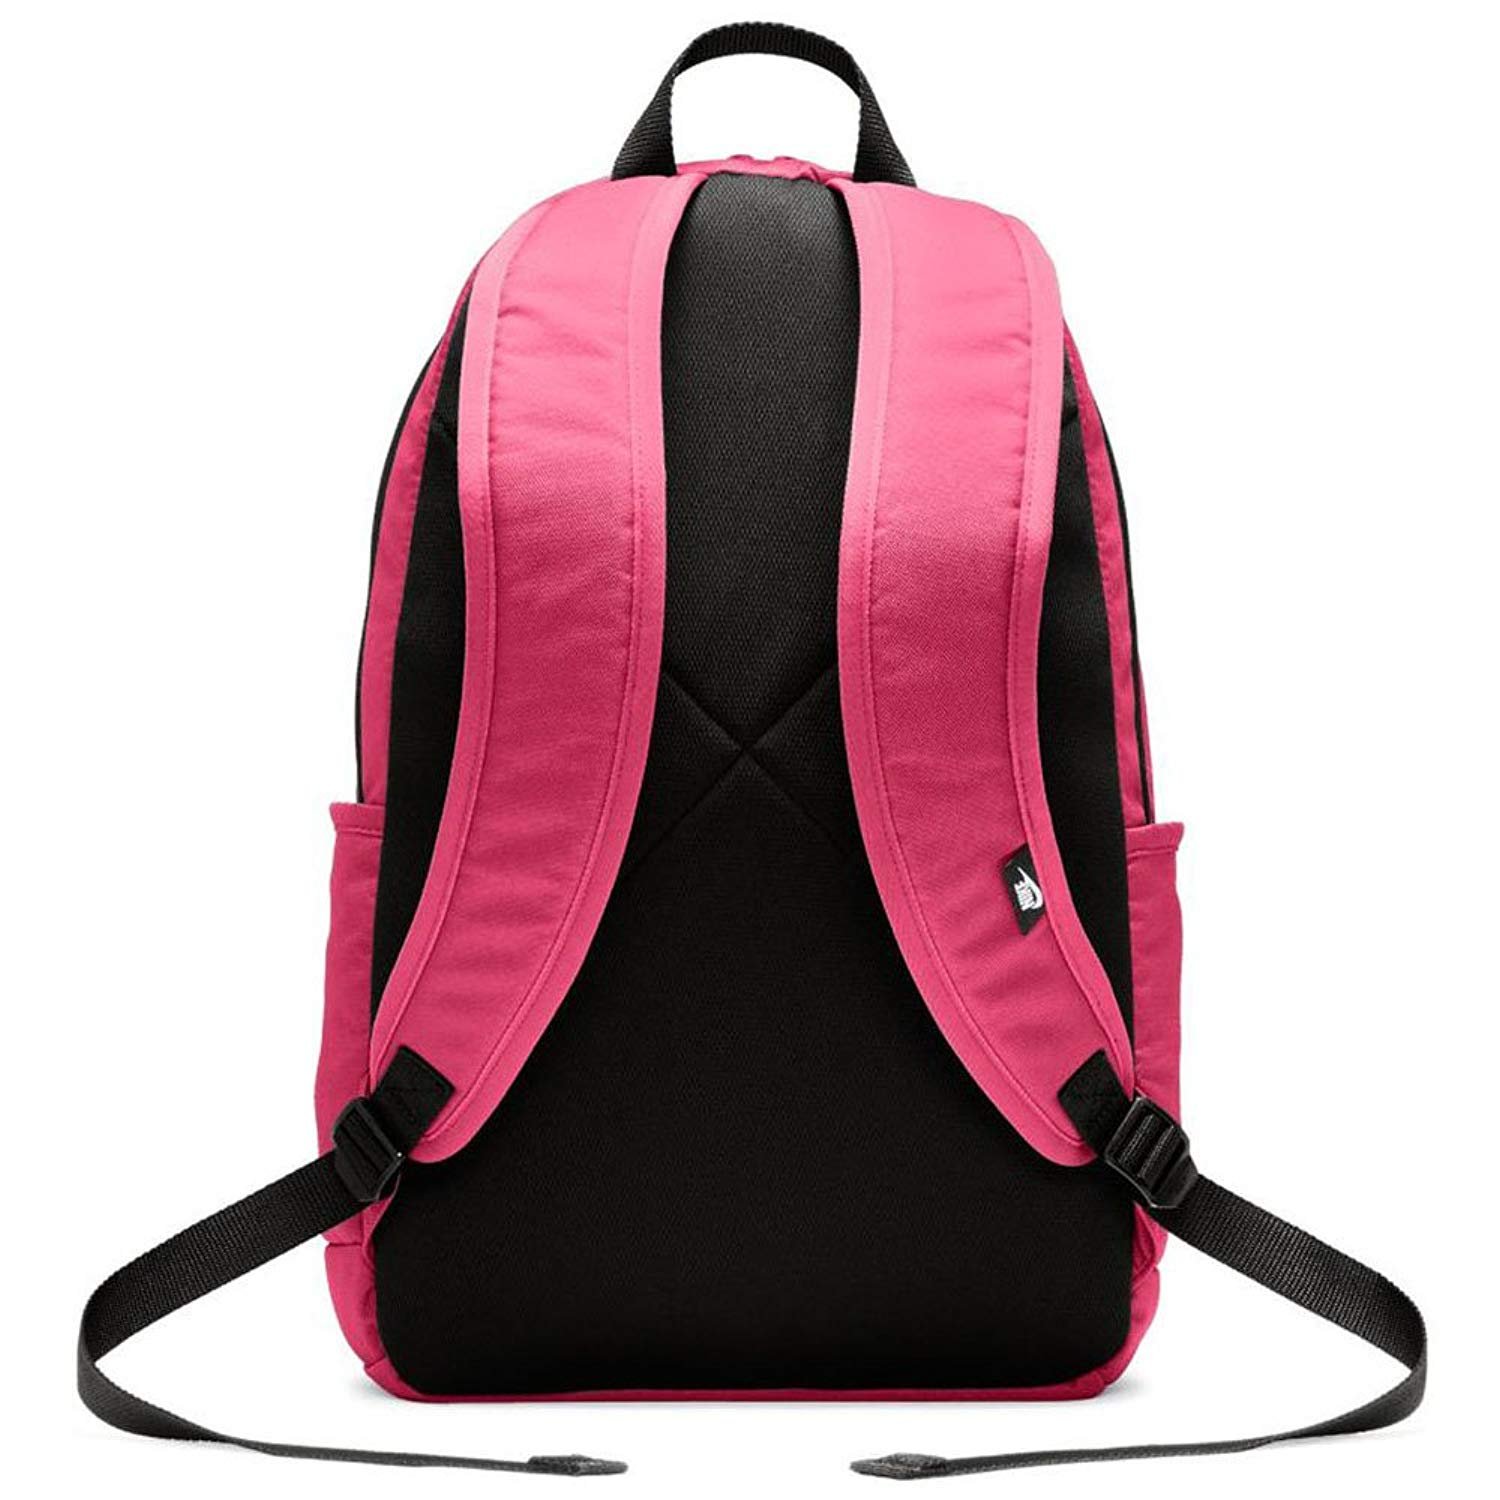 Valentine's Bubblegum $ 99.95 - Nike Run Commuter 15L Backpack